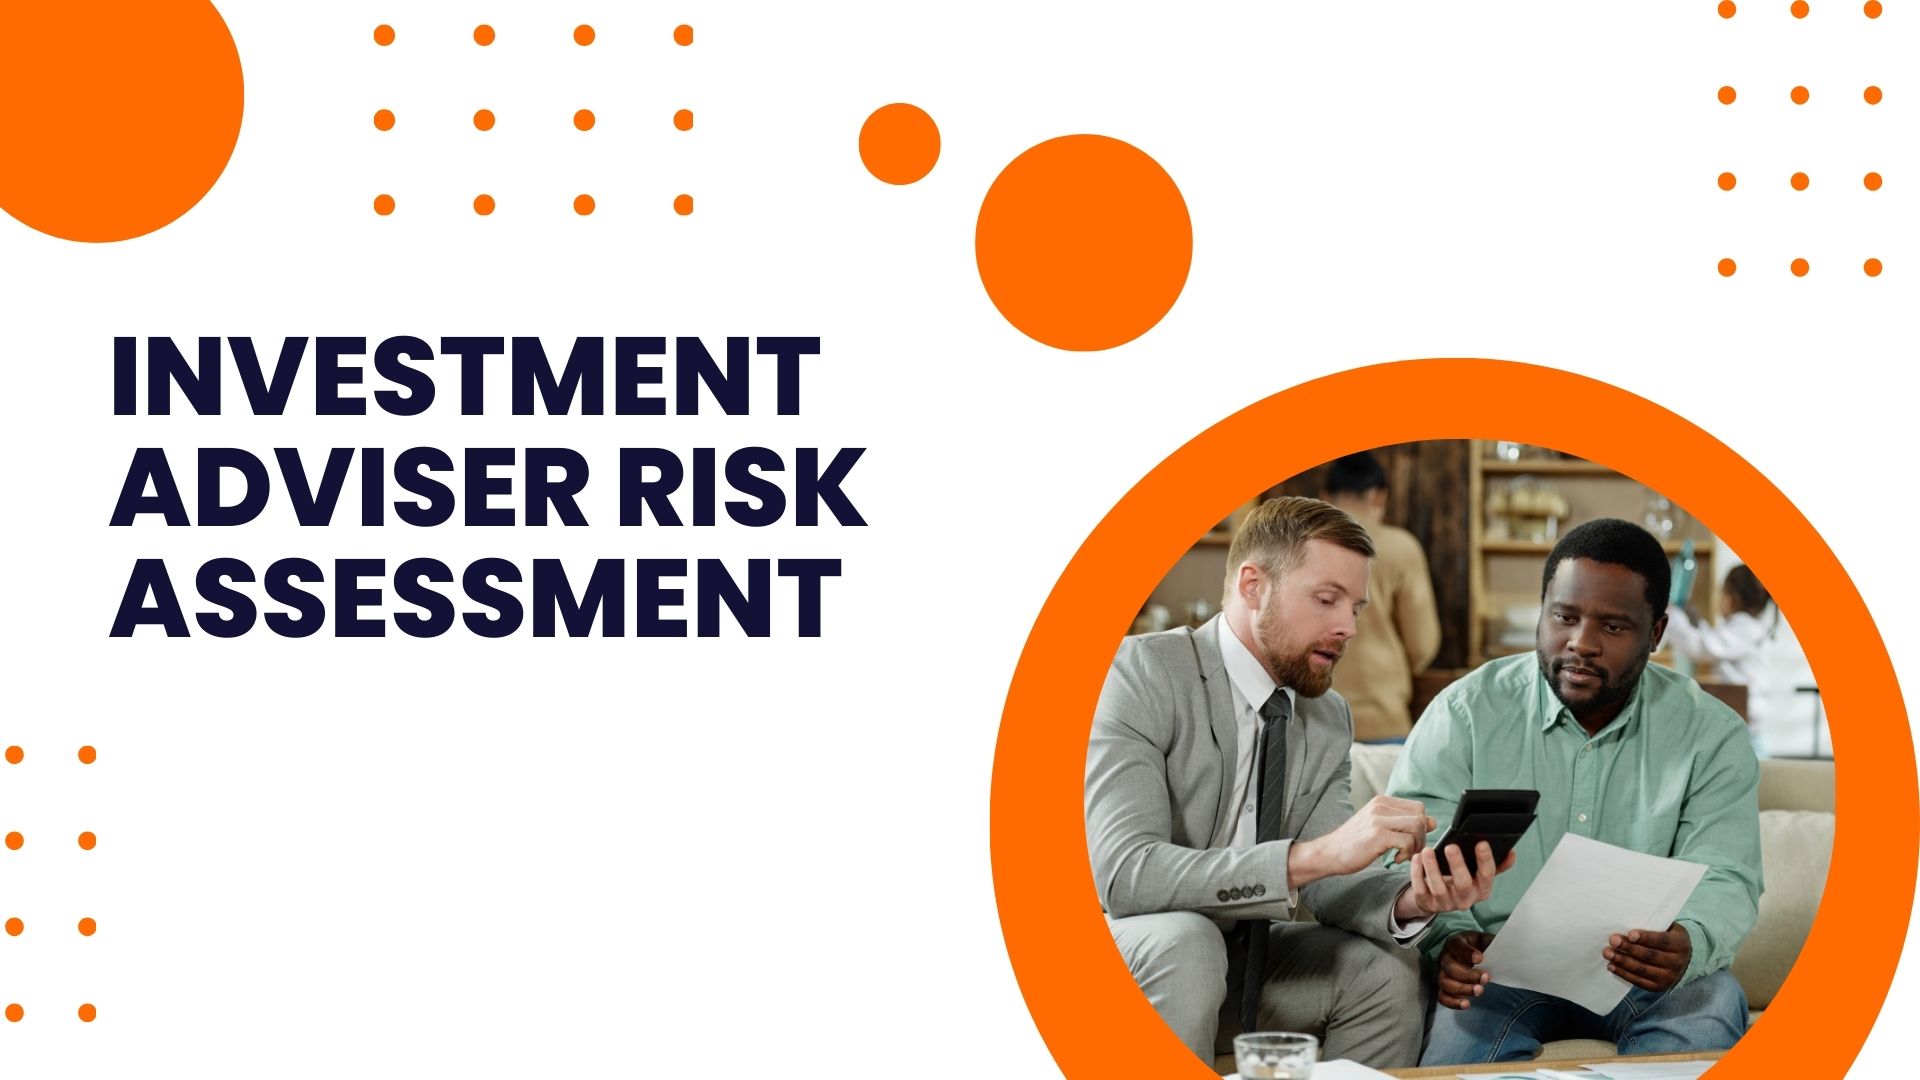 Investment Adviser Risk Assessment